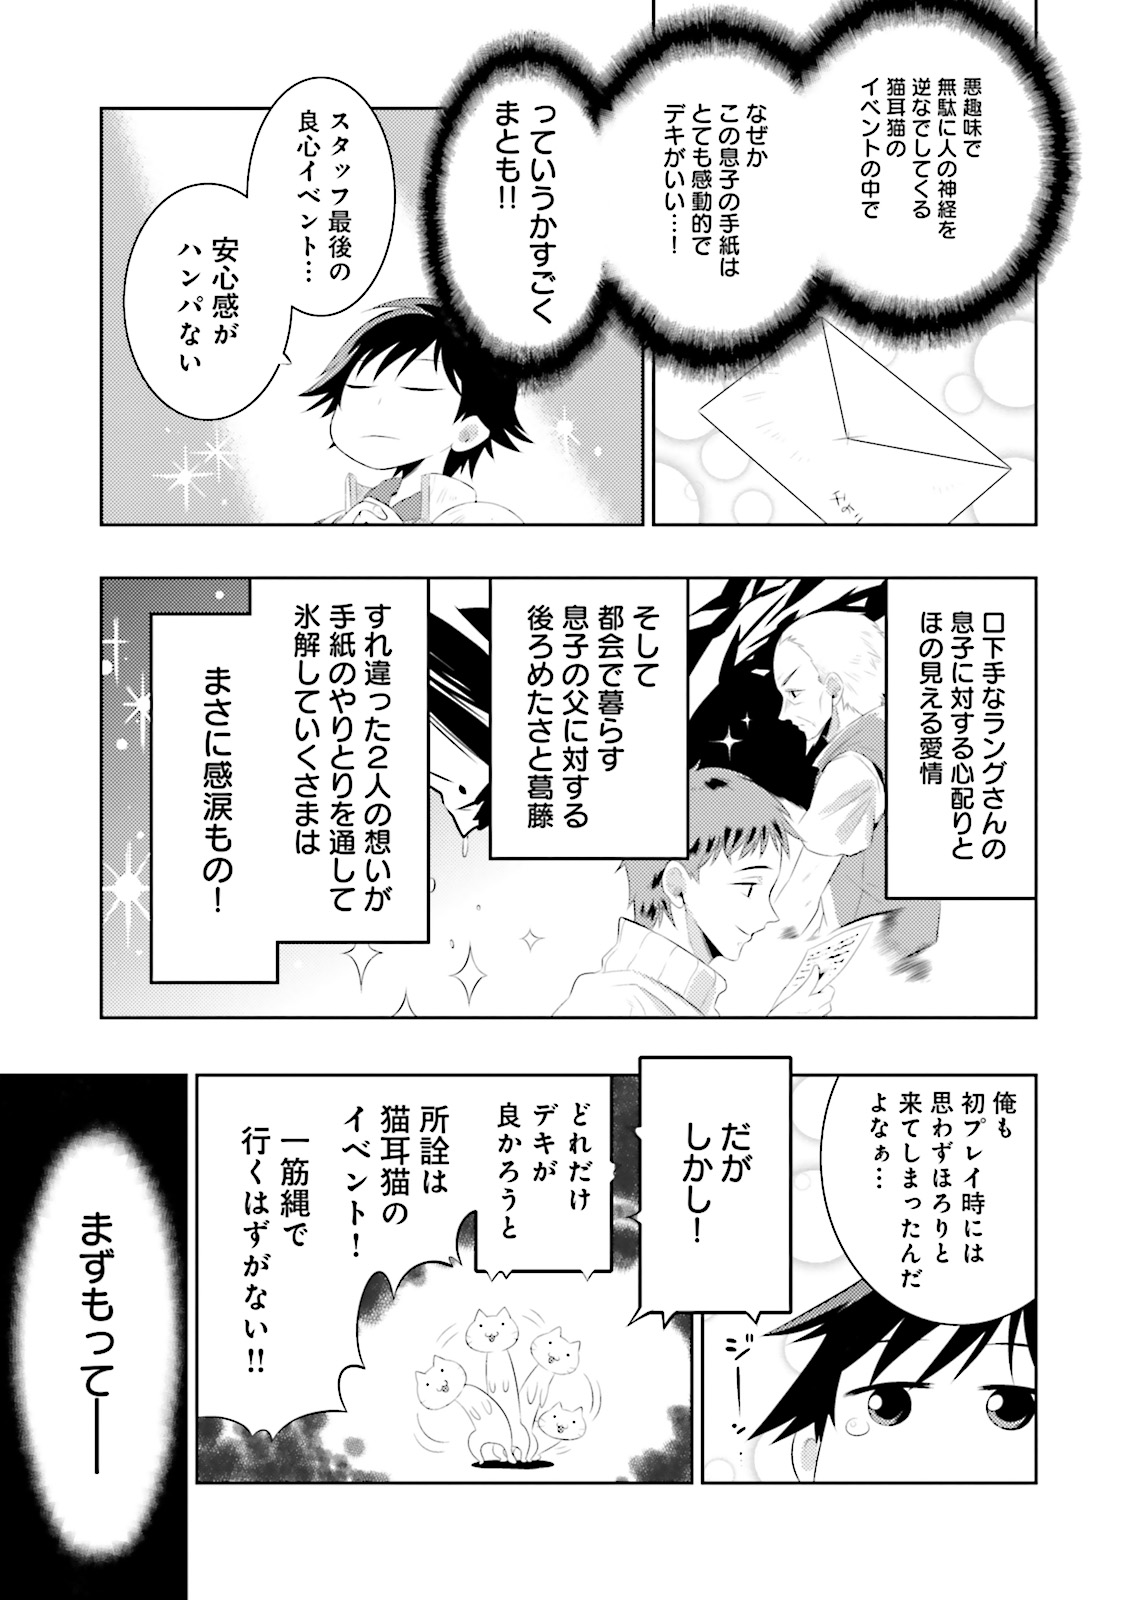 この世界がゲームだと俺だけが知ってい (Manga) 第4話 - Page 14